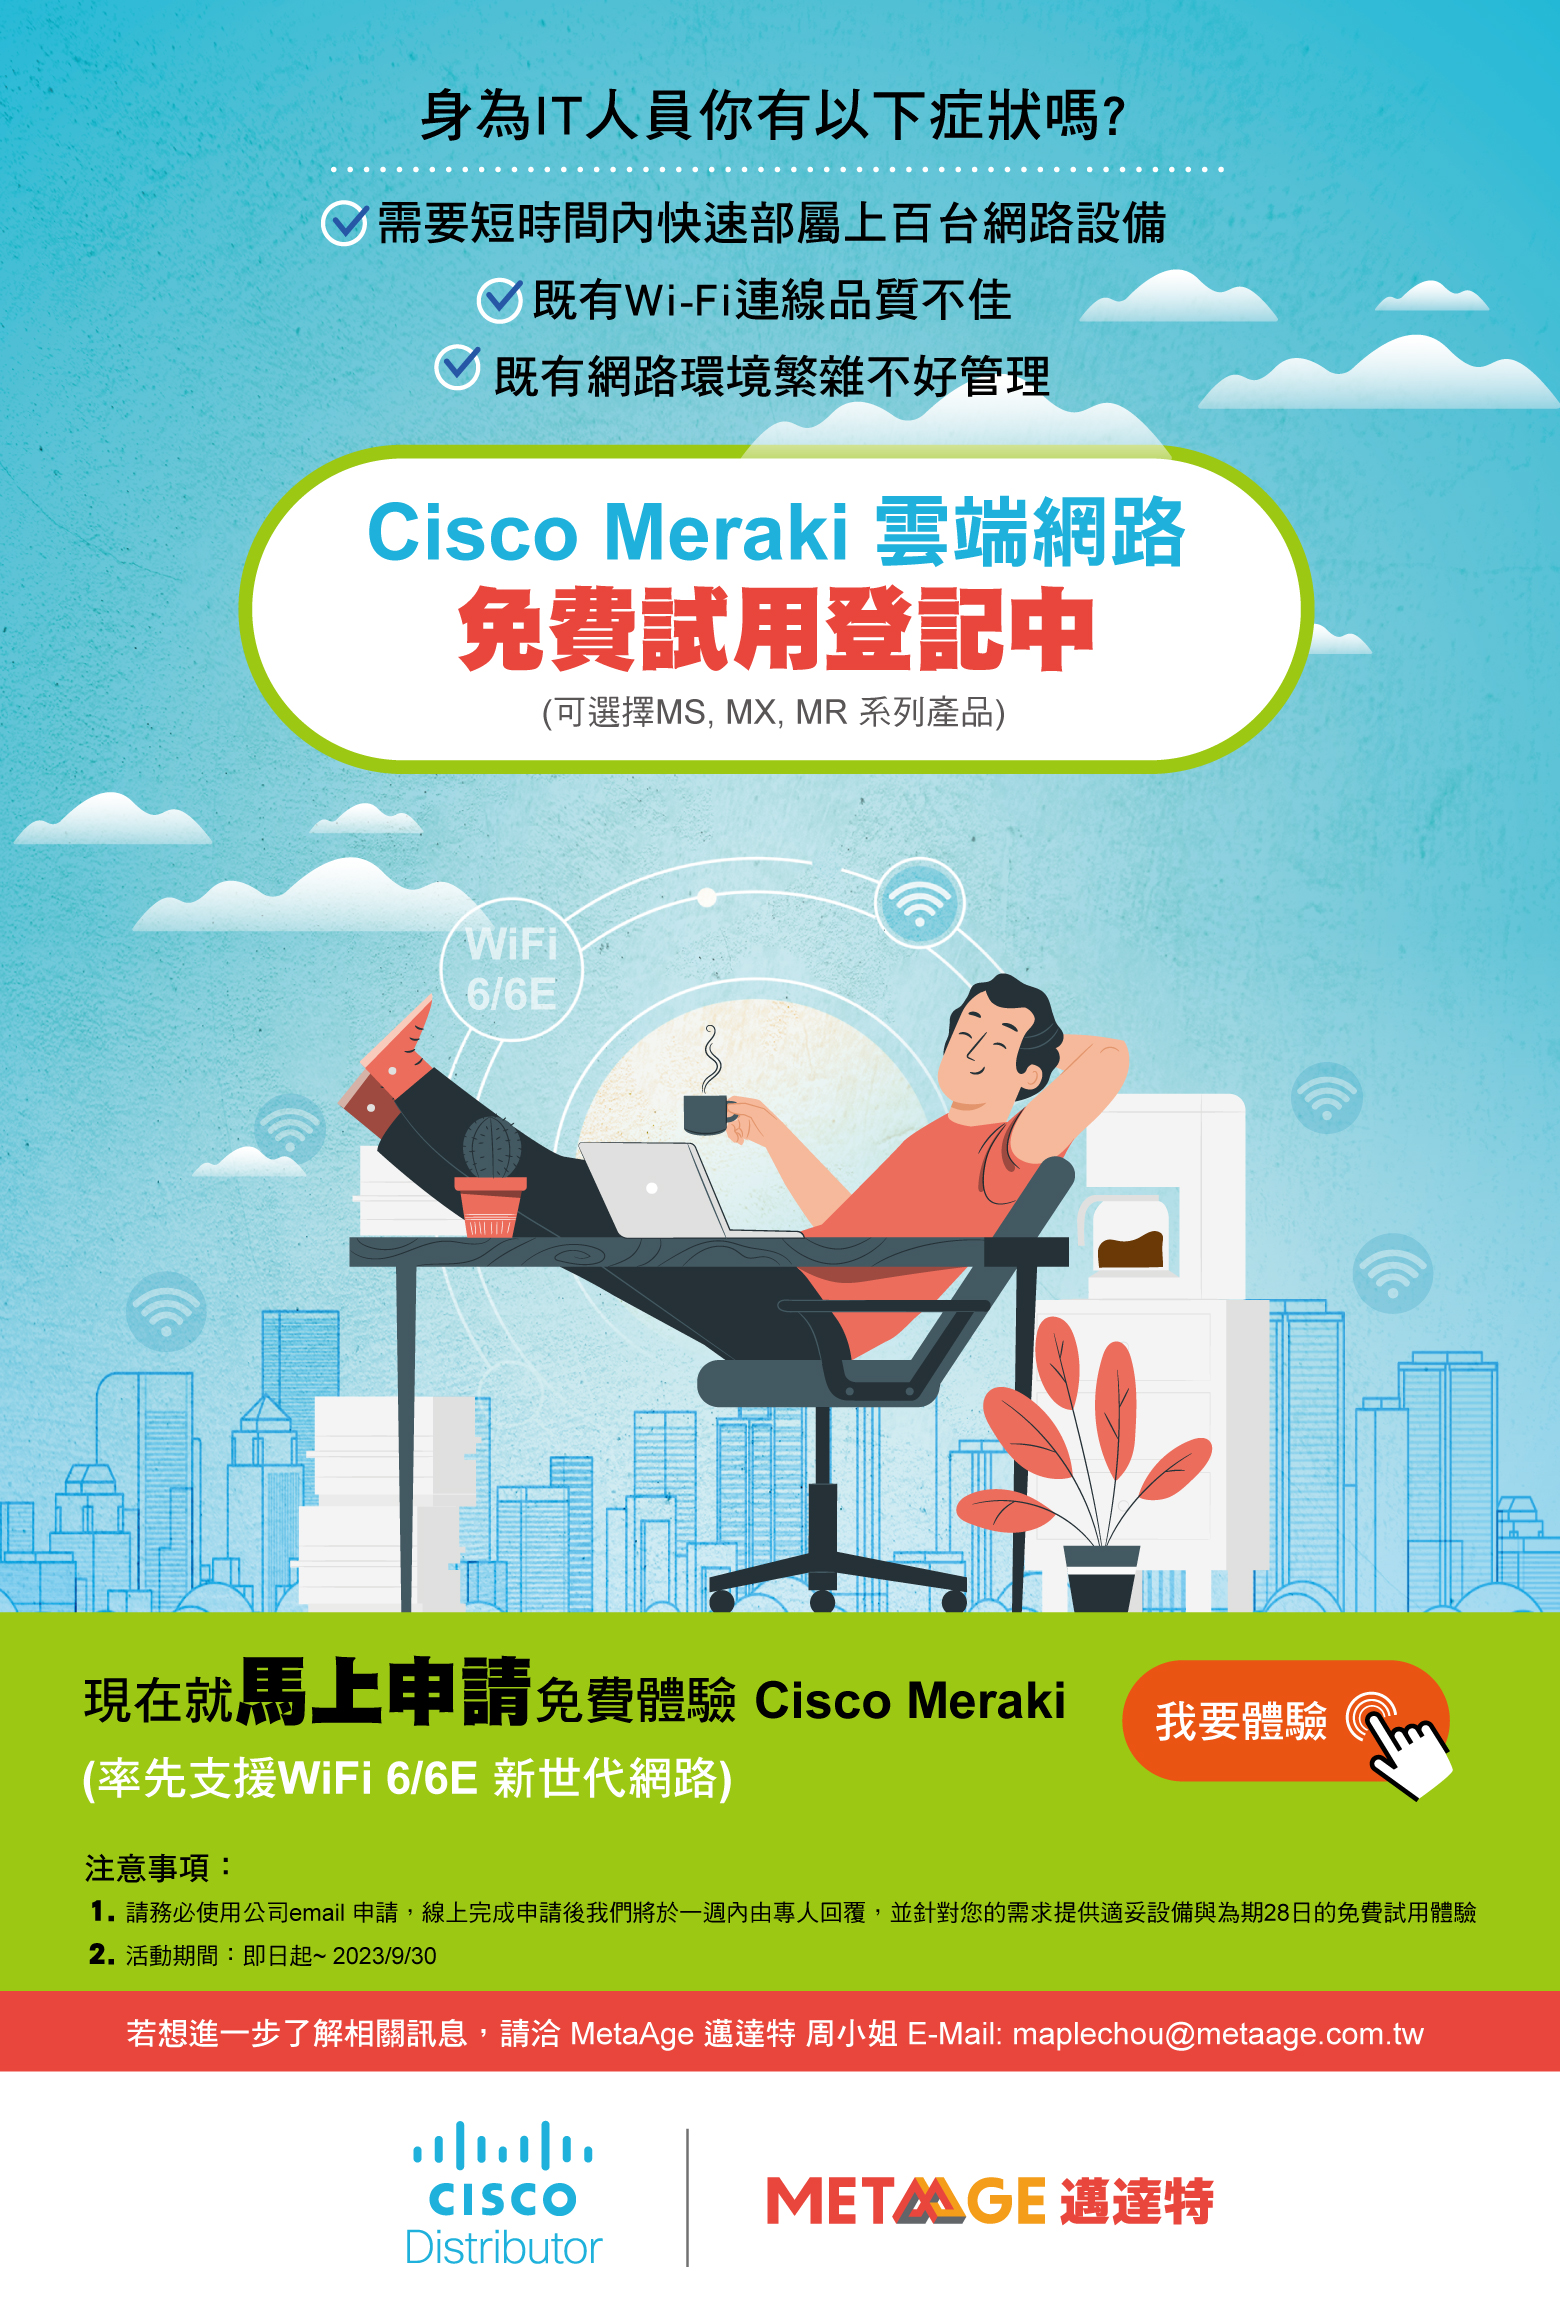 免費試用 Cisco Meraki 雲端網路架構